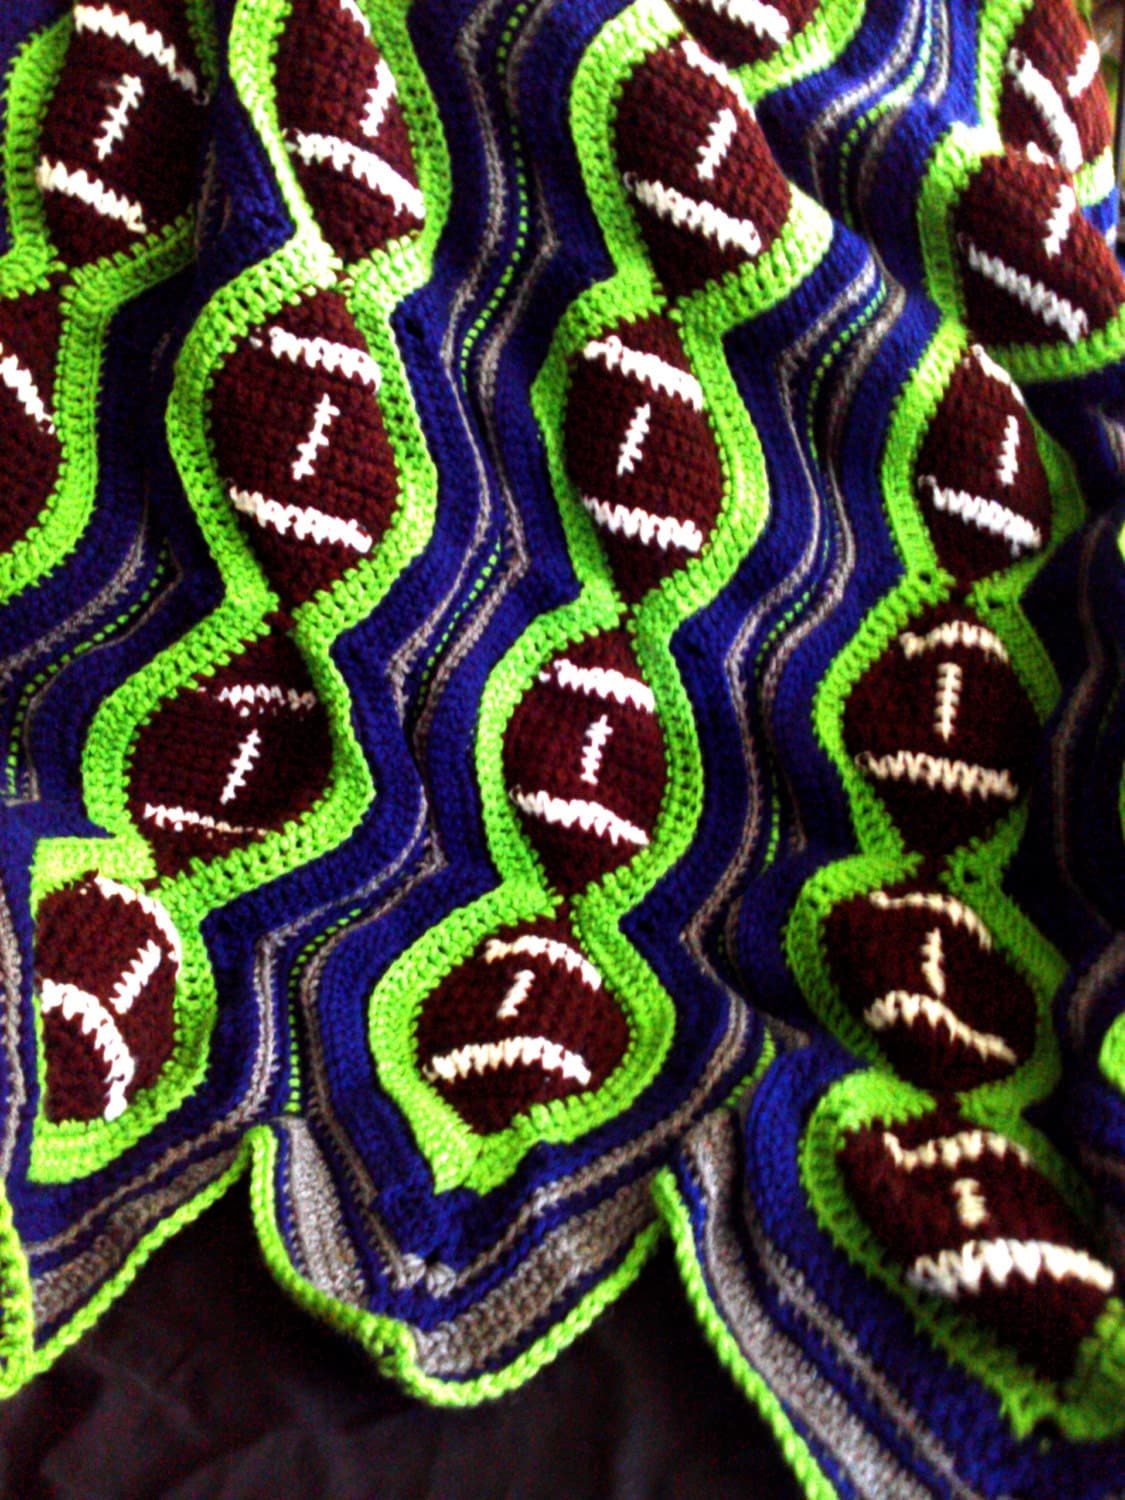 Crochet football blanket in Seattle SeaHawks colors by AKAGRAMMA